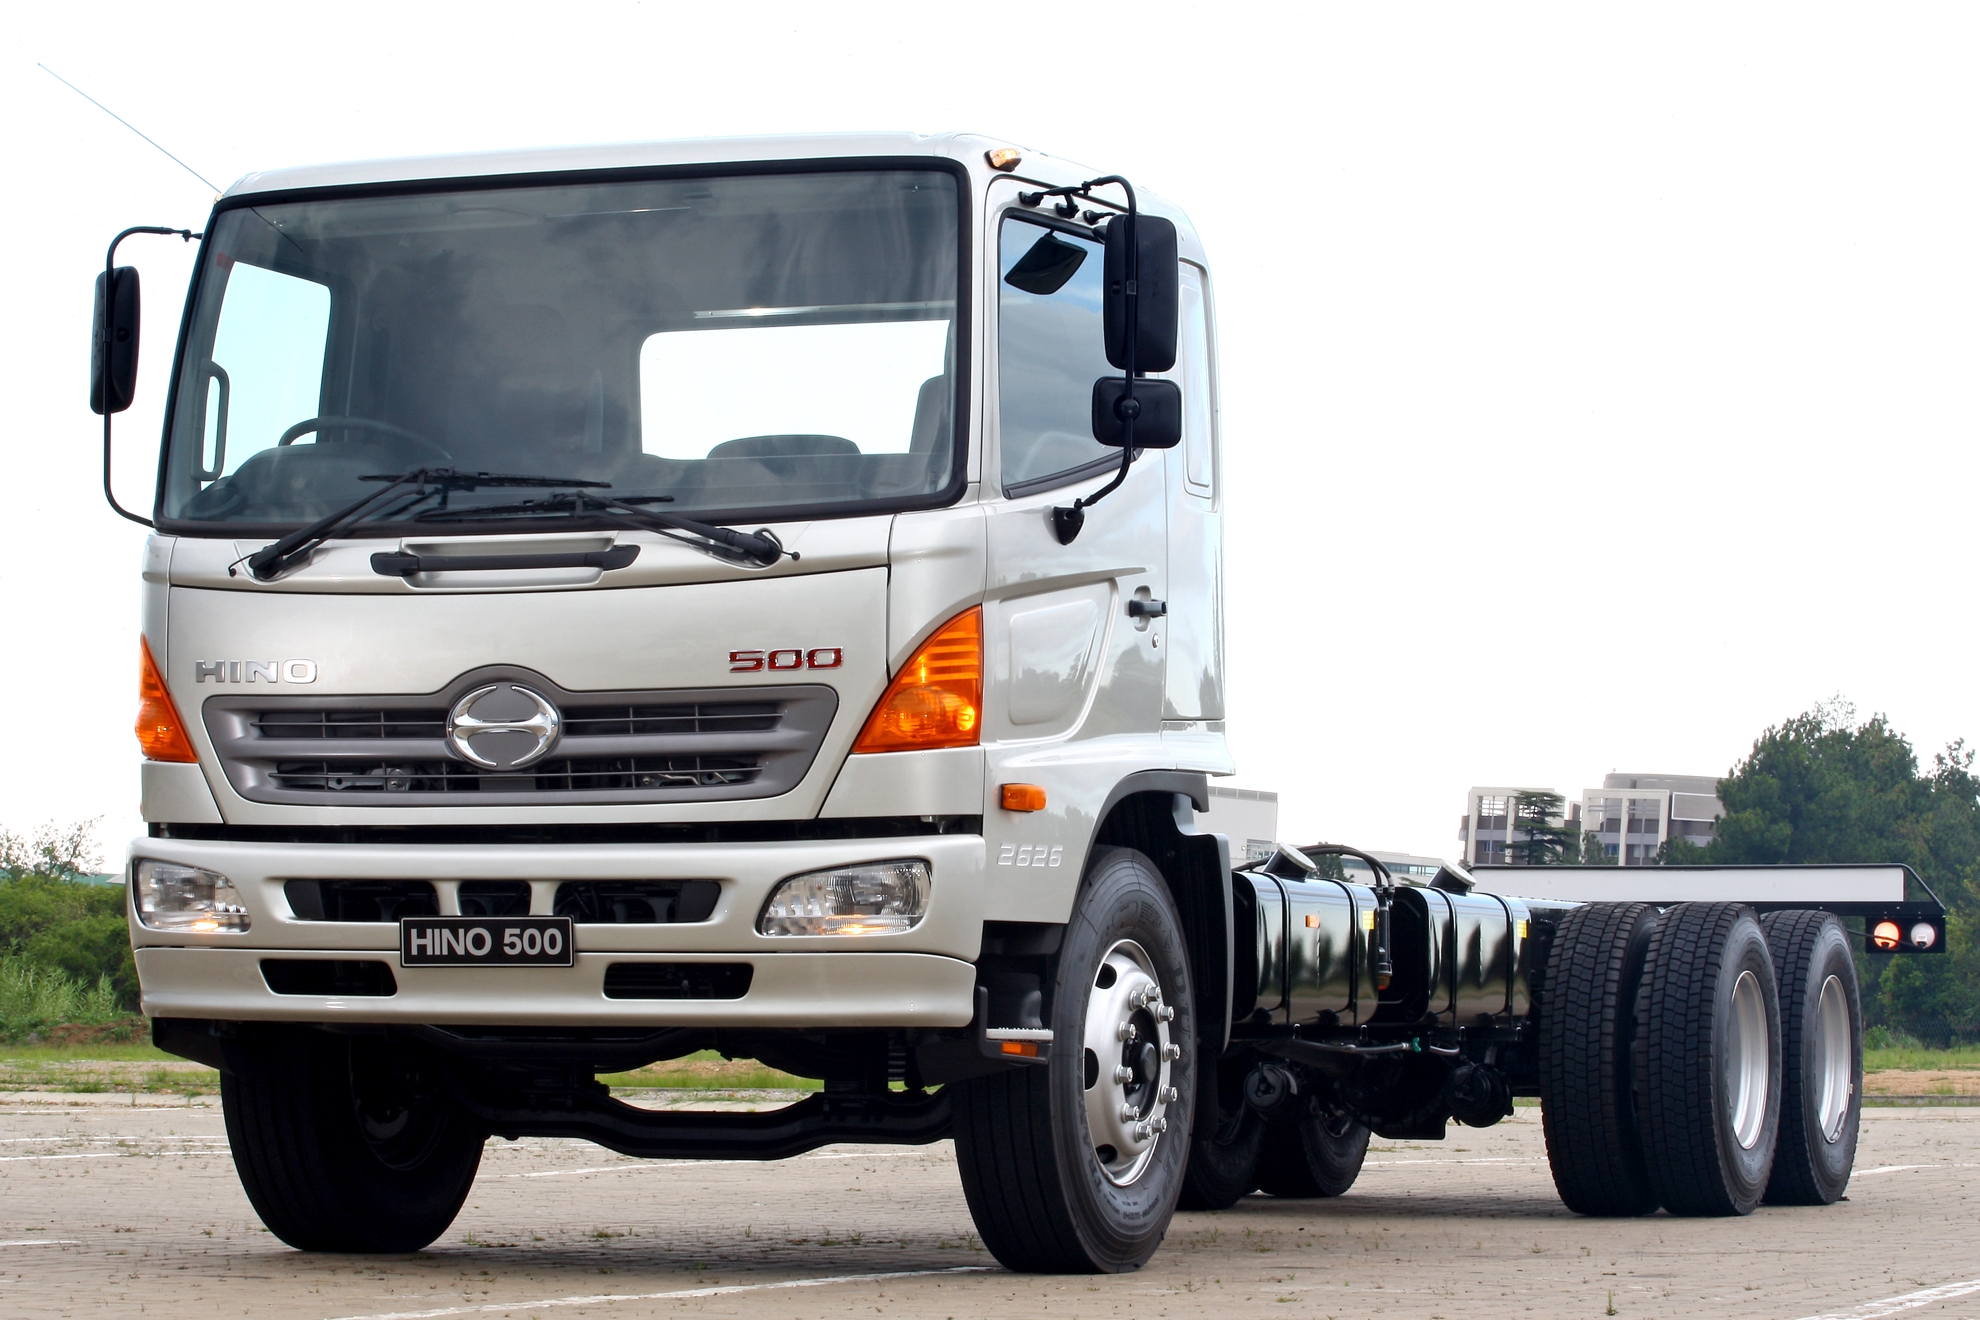 Hino Trucks South Africa add Hino 500 Truck Range